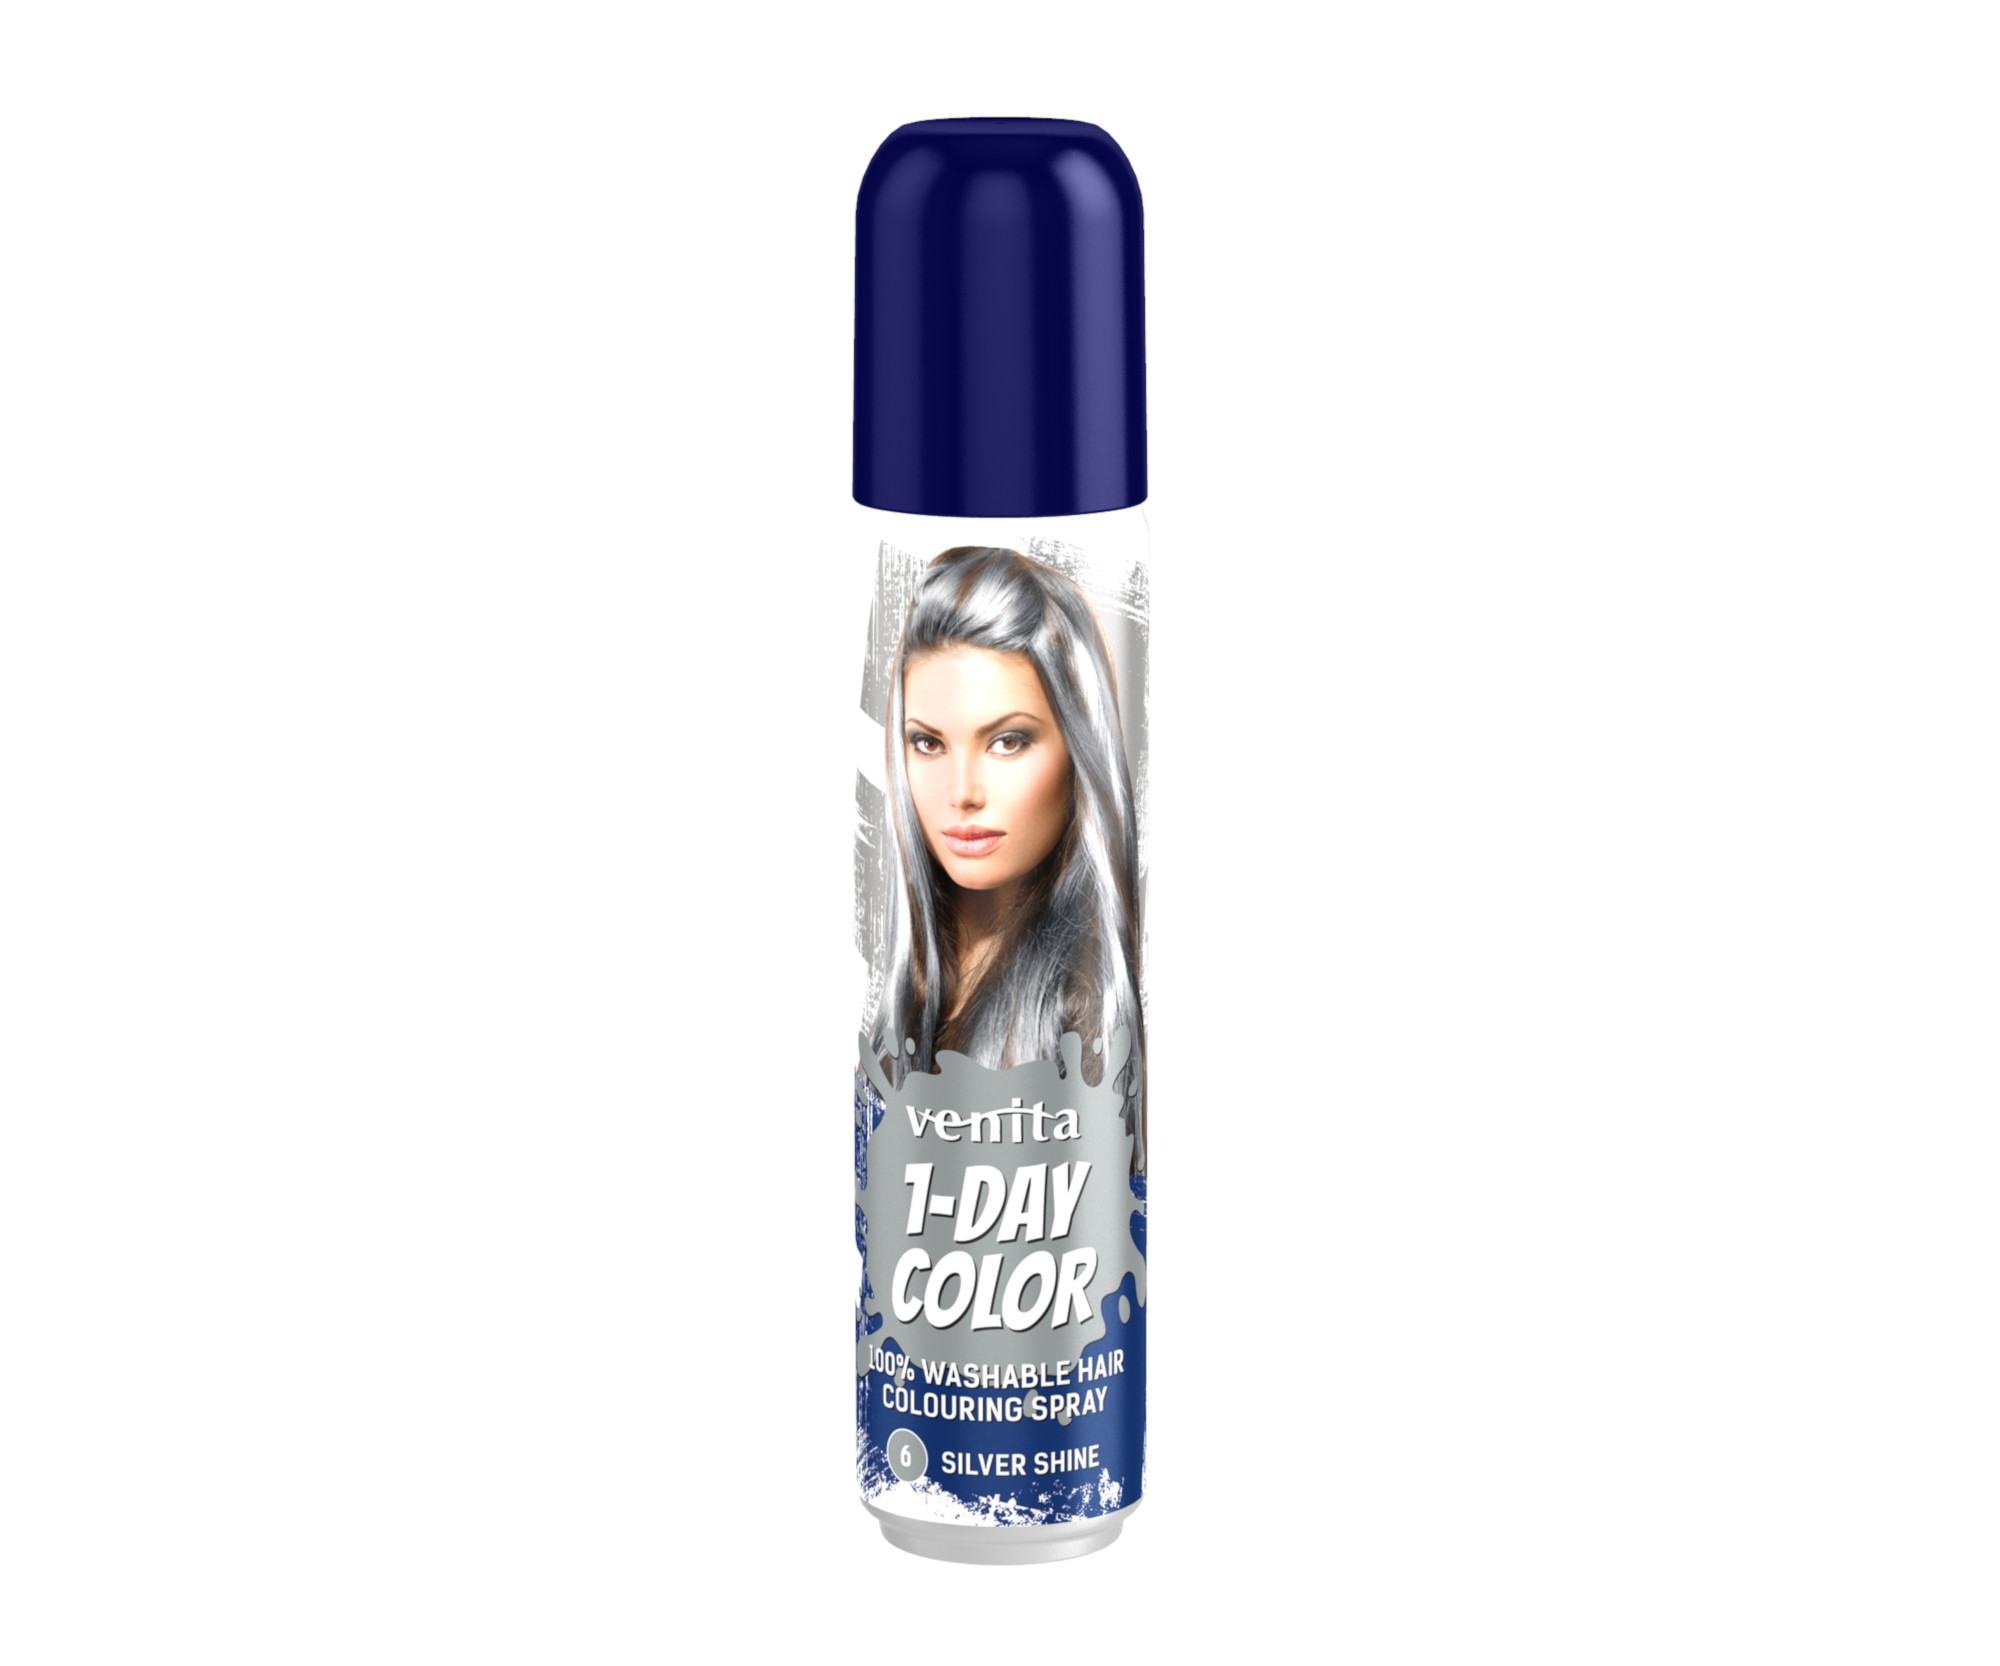 Barevný sprej na vlasy Venita 1-Day Color Silver Shine - 50 ml, stříbrně lesklá (CSS06)